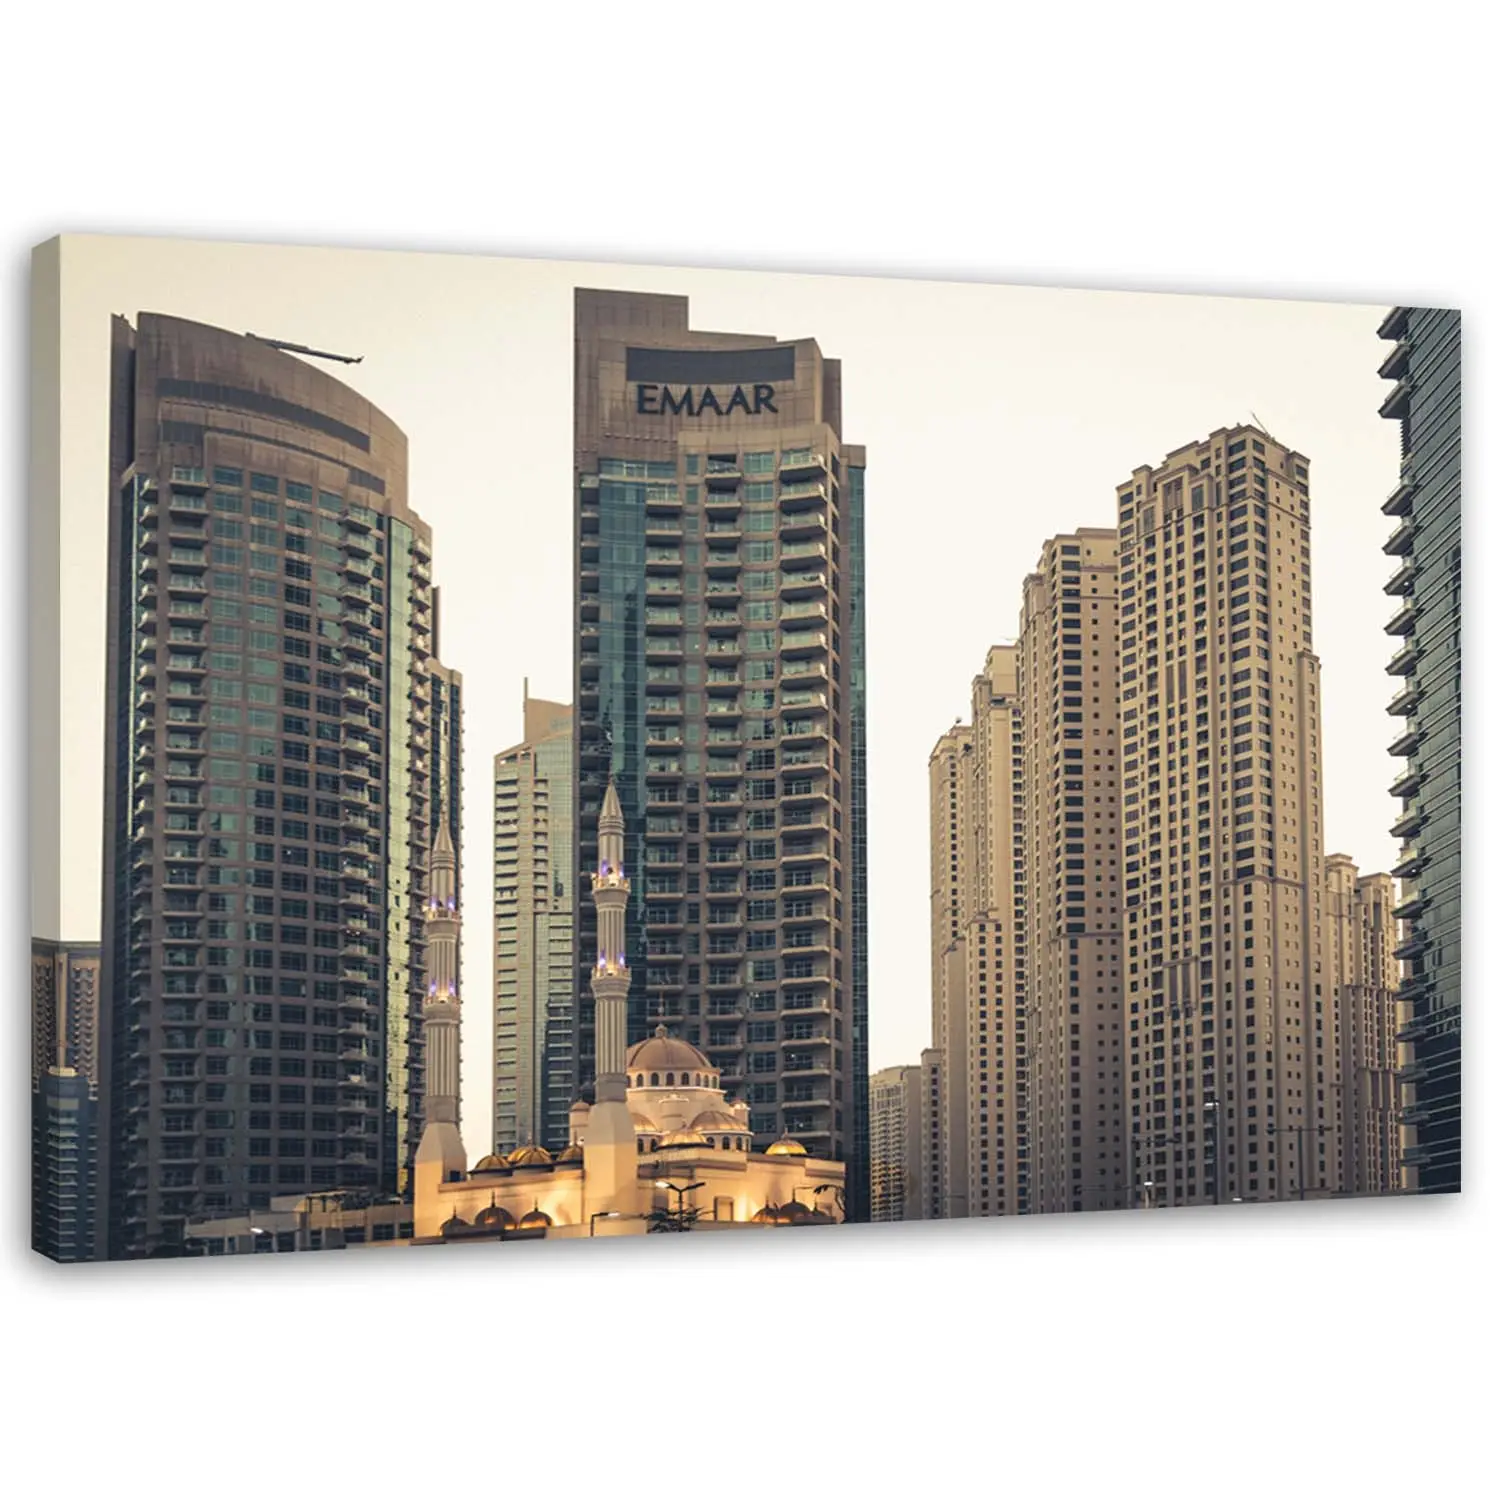 Die Dubai Wandbilder Wolkenkratzer von